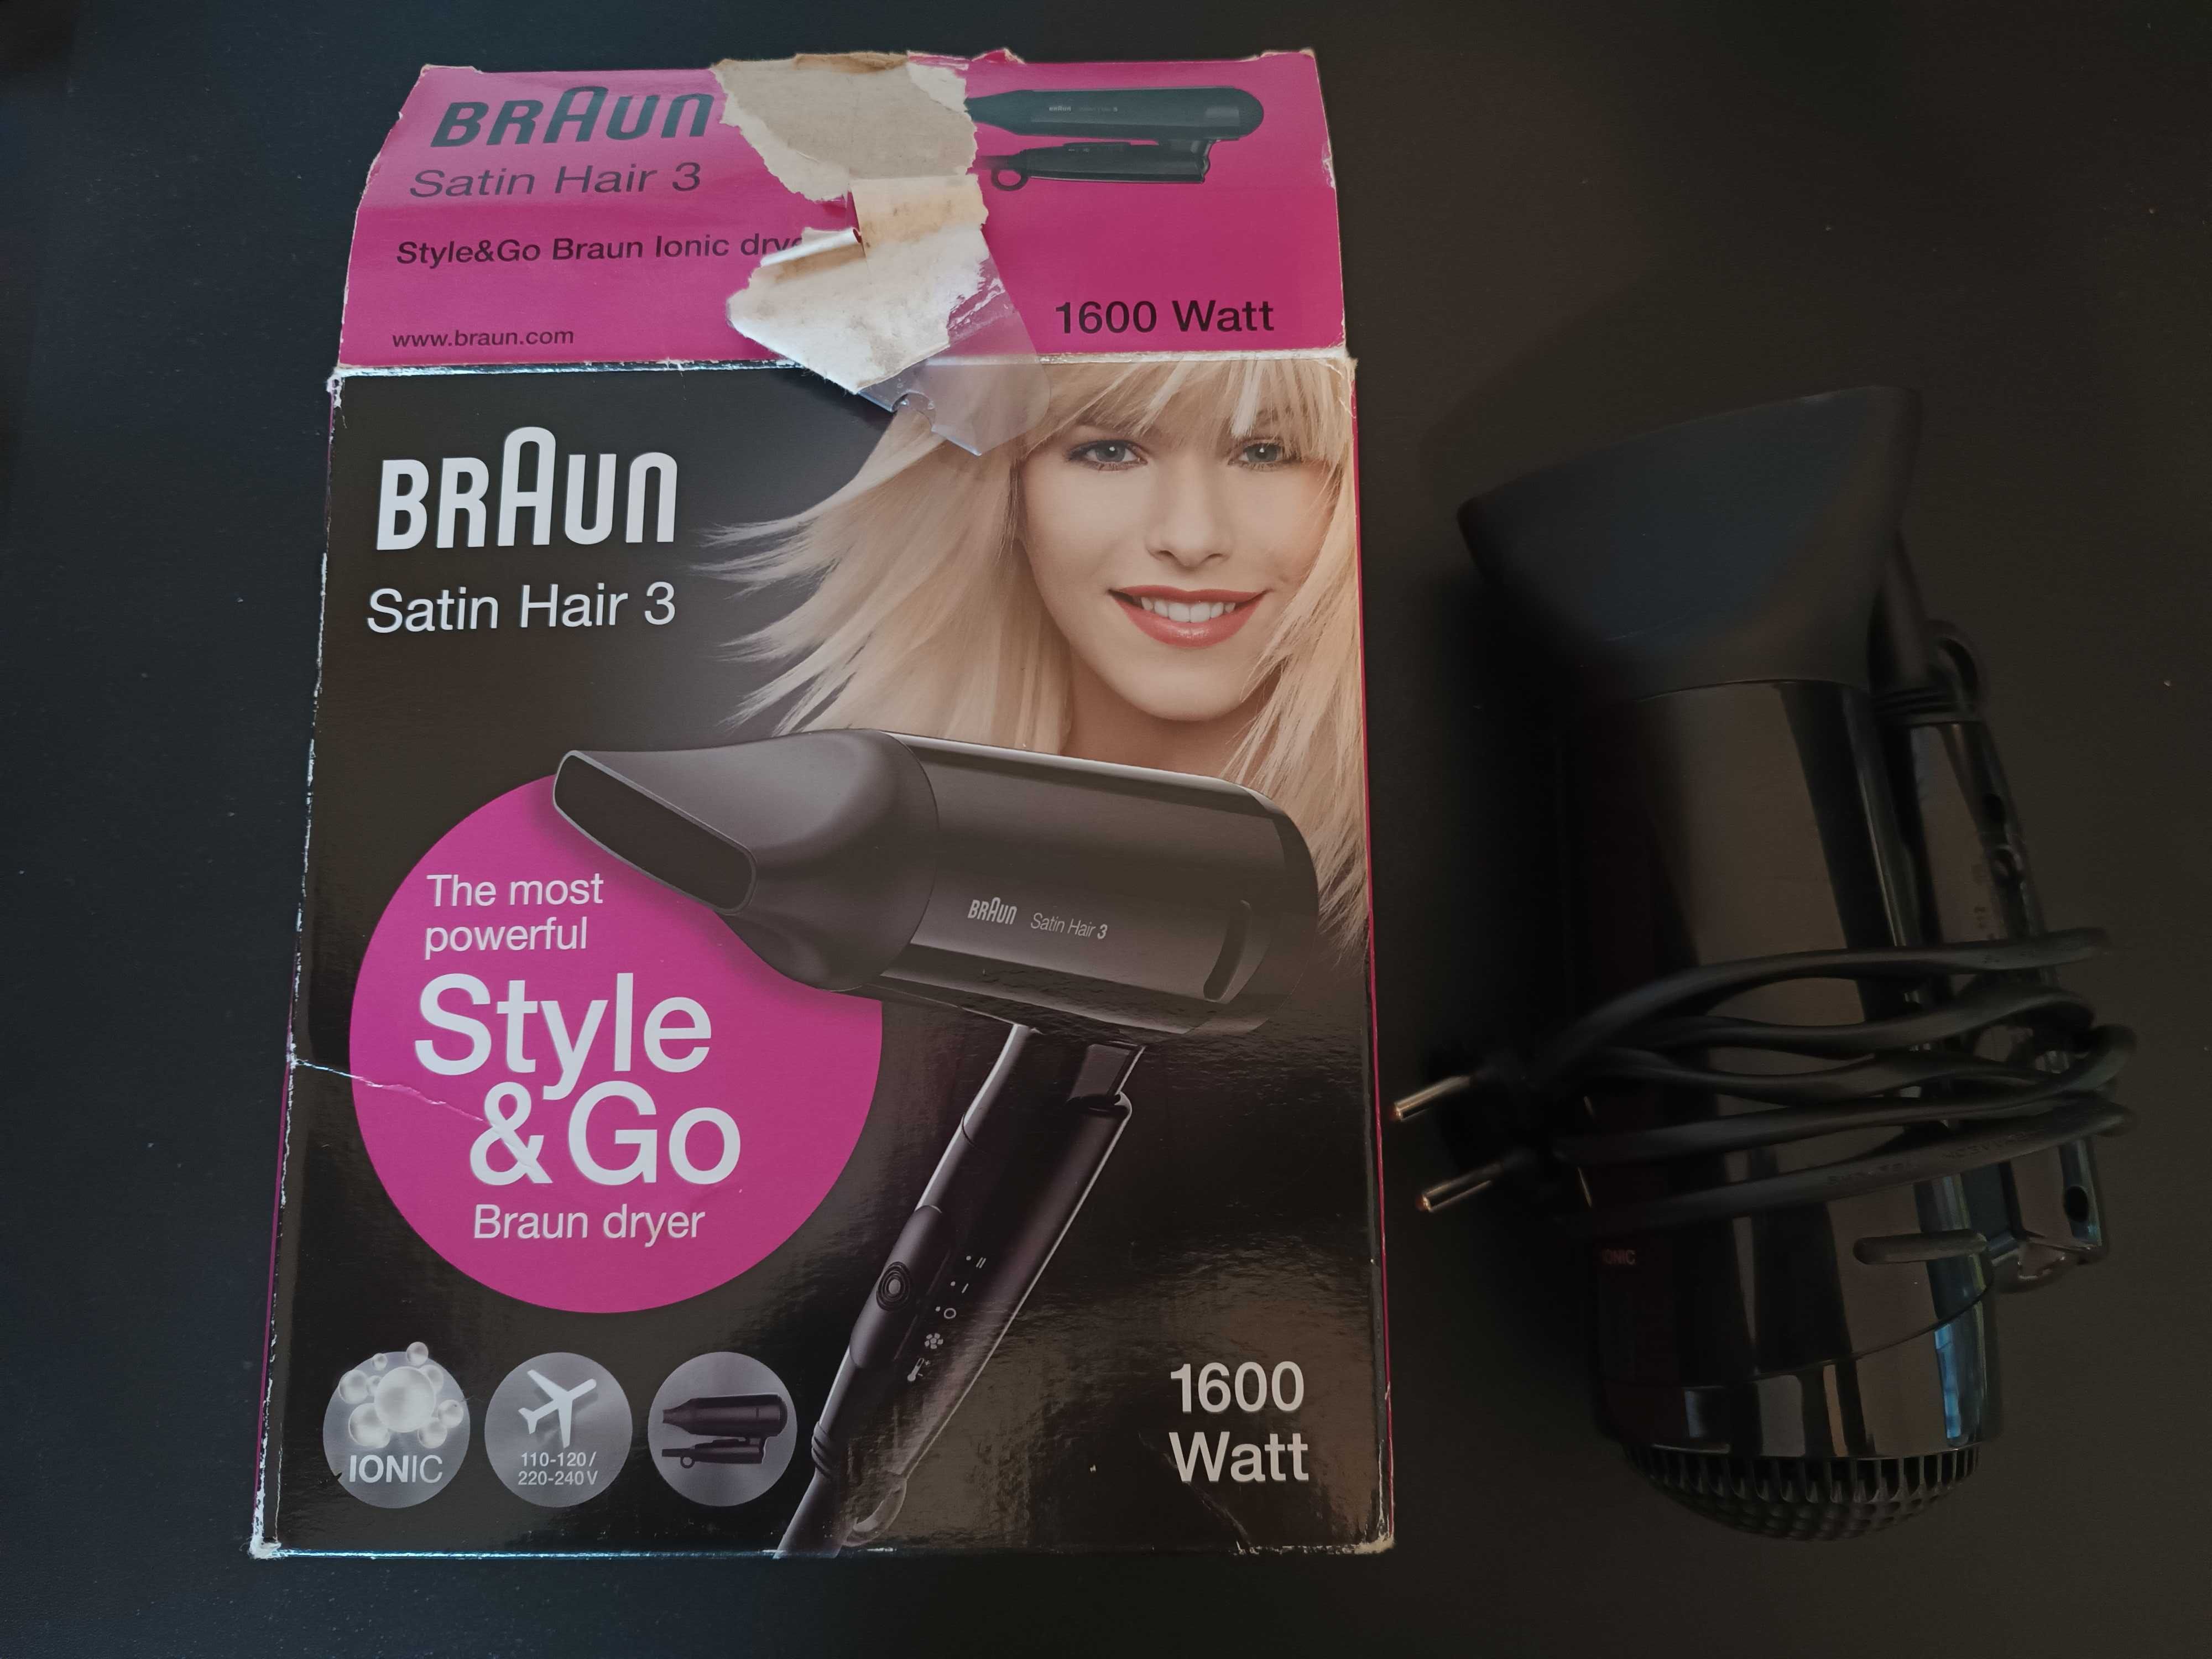 Secador de cabelo travel size Braun satin hair 3